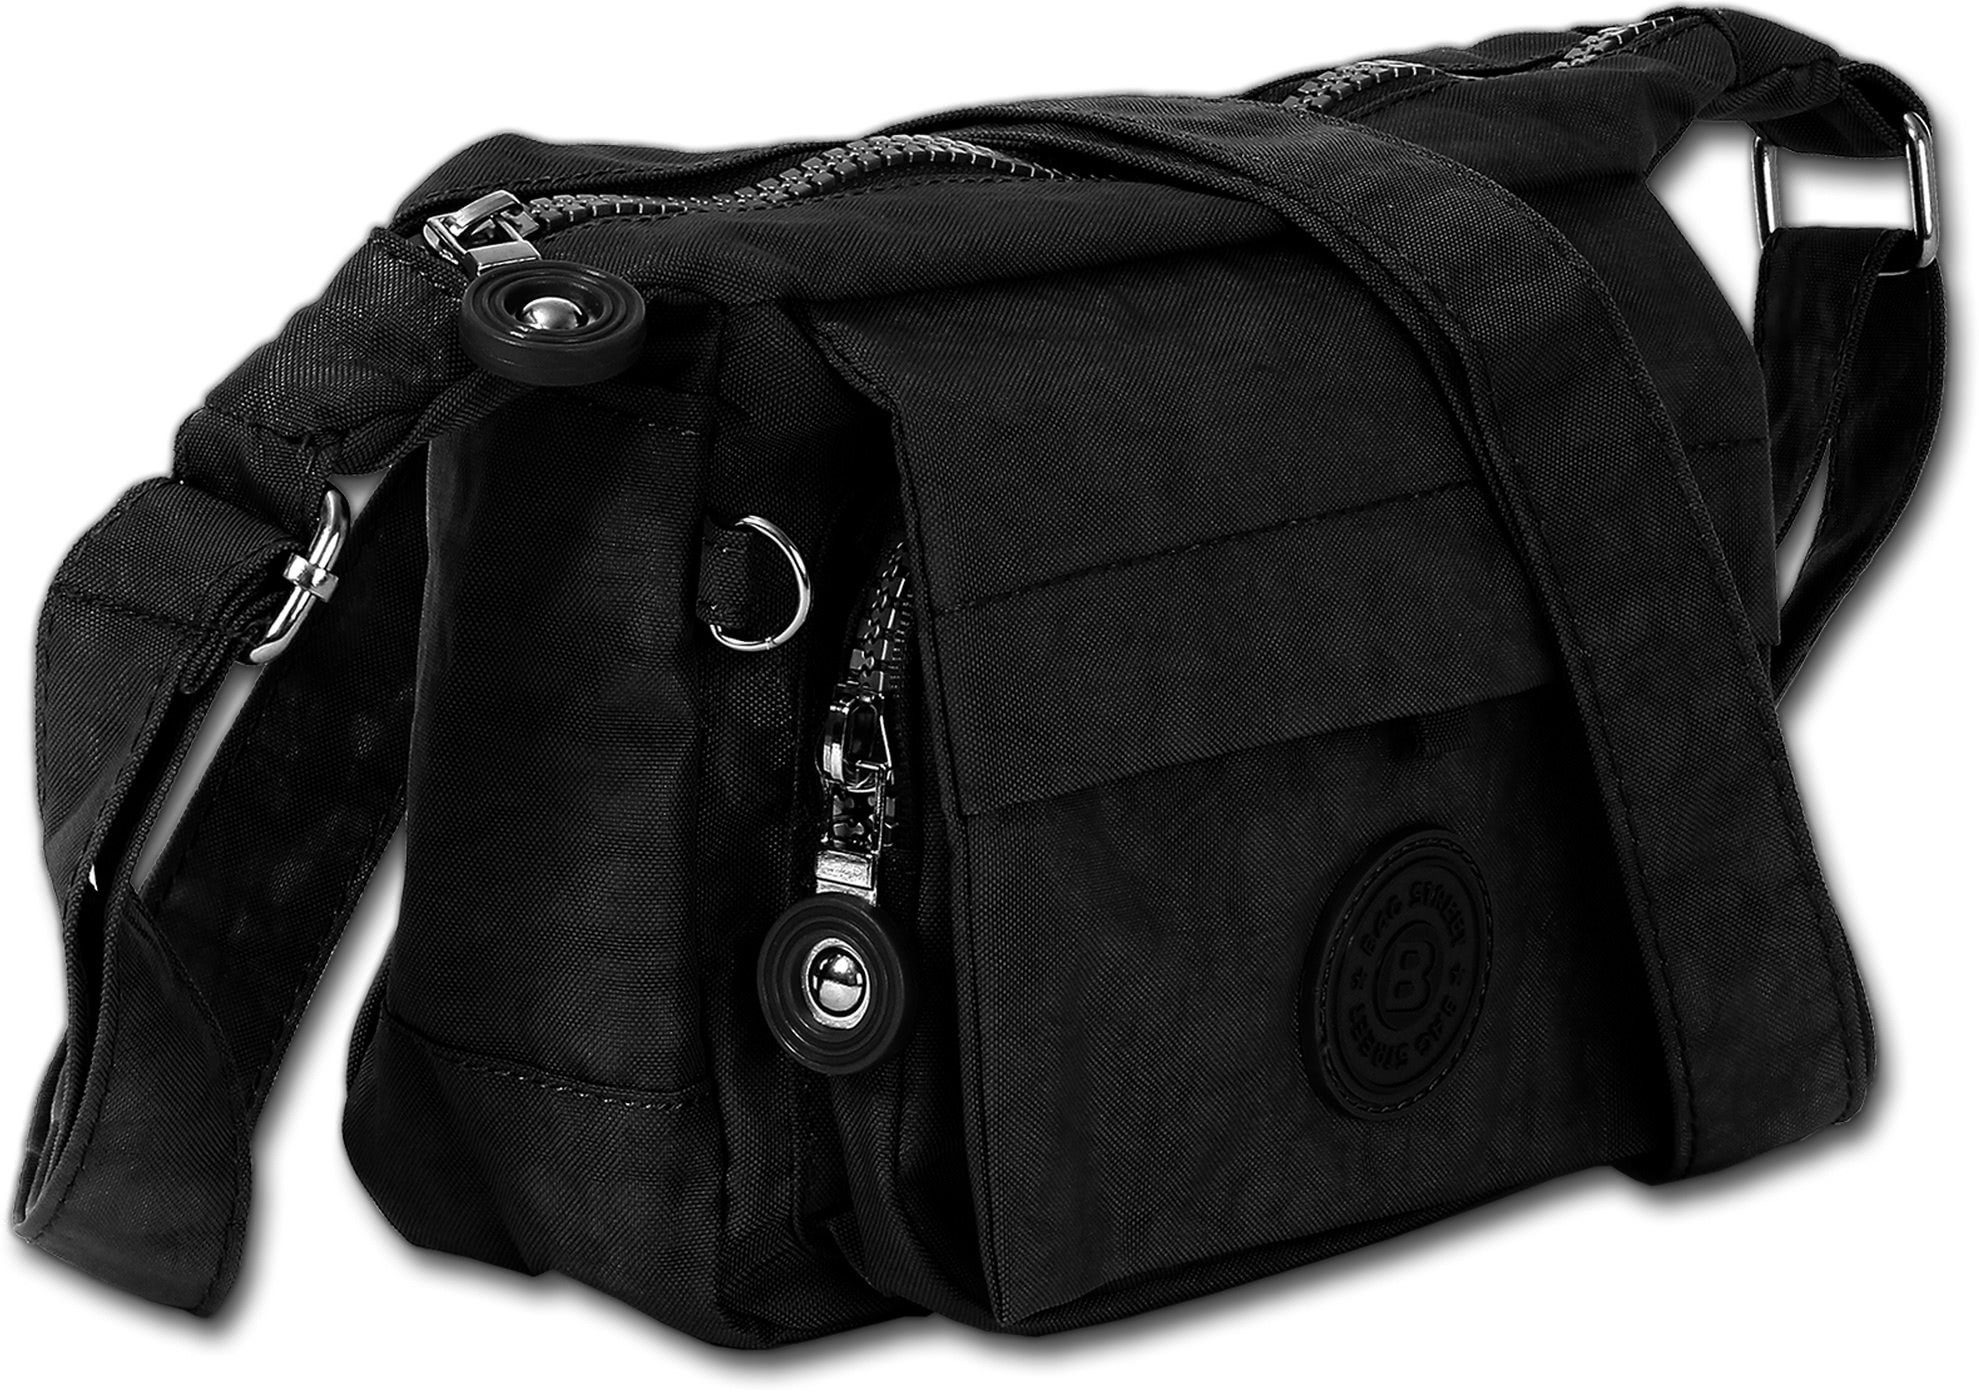 BAG STREET Abendtasche Bag Street Nylon Tasche Damen Handtasche, Damen, Jugend Tasche strapazierfähiges Textilnylon schwarz